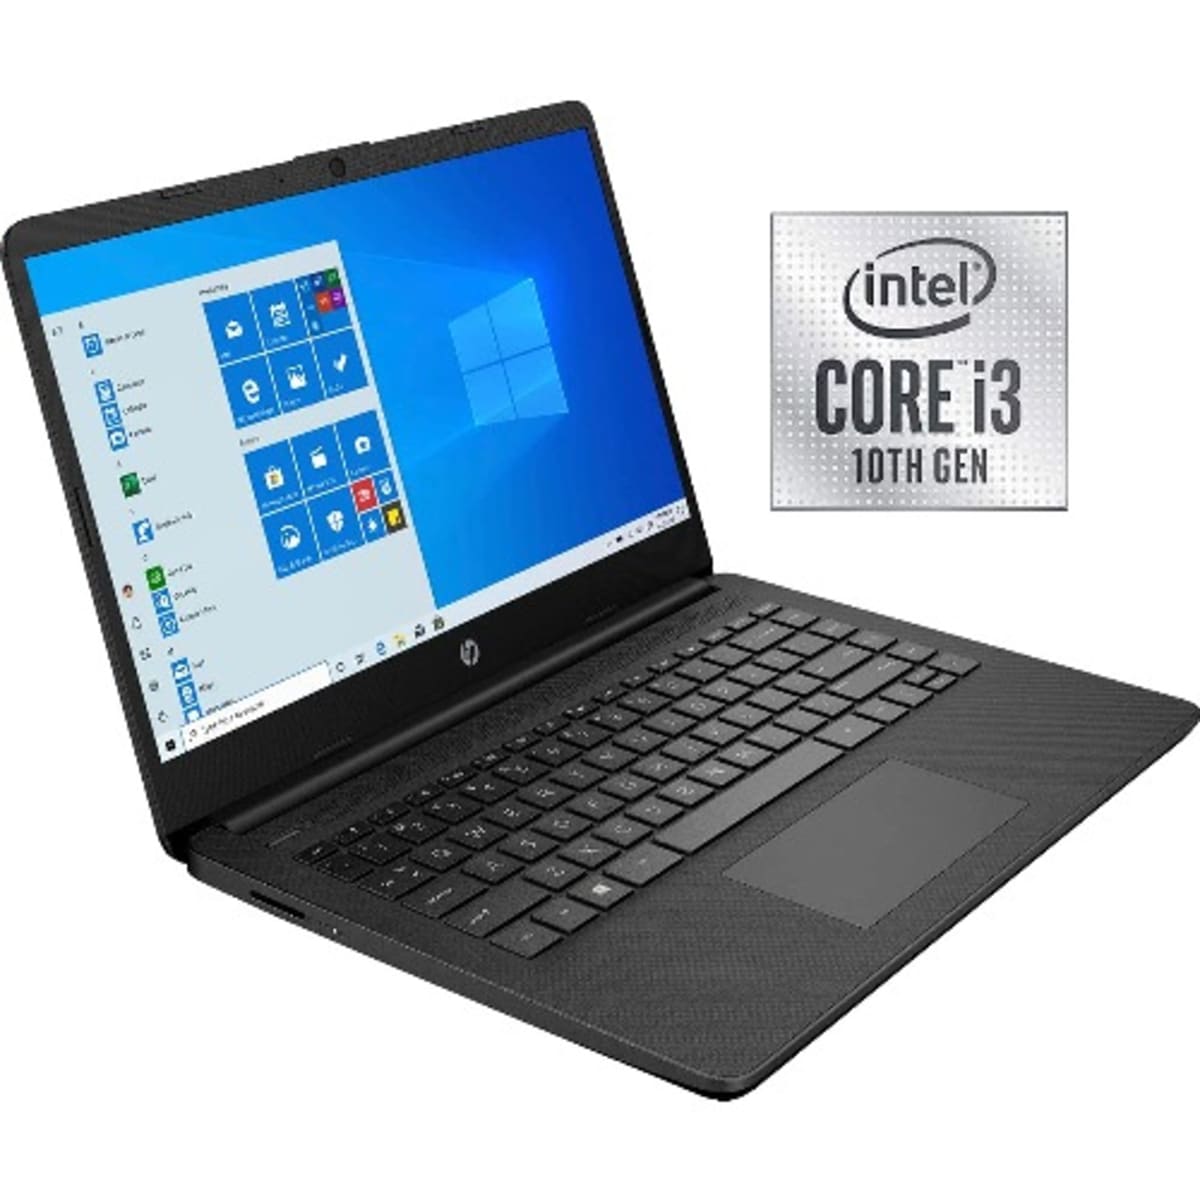 Hp 14 Notebook, Intel Core i3 Processor, 4GB Ram, 1TB HDD